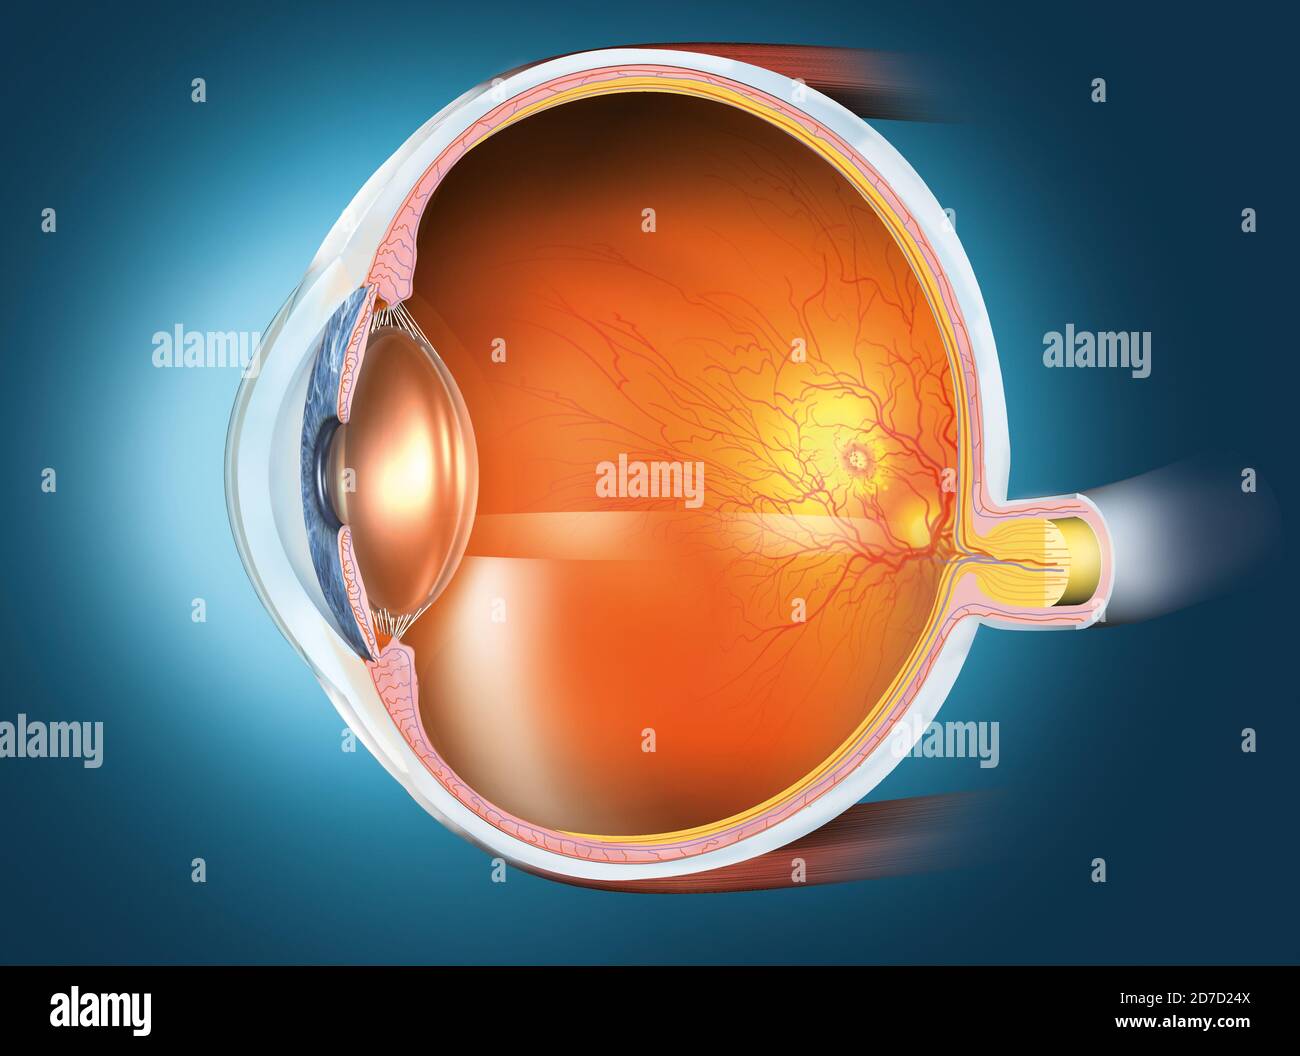 Illustrazione medica 3D che mostra un occhio umano sano con lente, retina, pupilla, iride, camera anteriore, camera posteriore, corpo ciliare, palla oculare, sangue Foto Stock